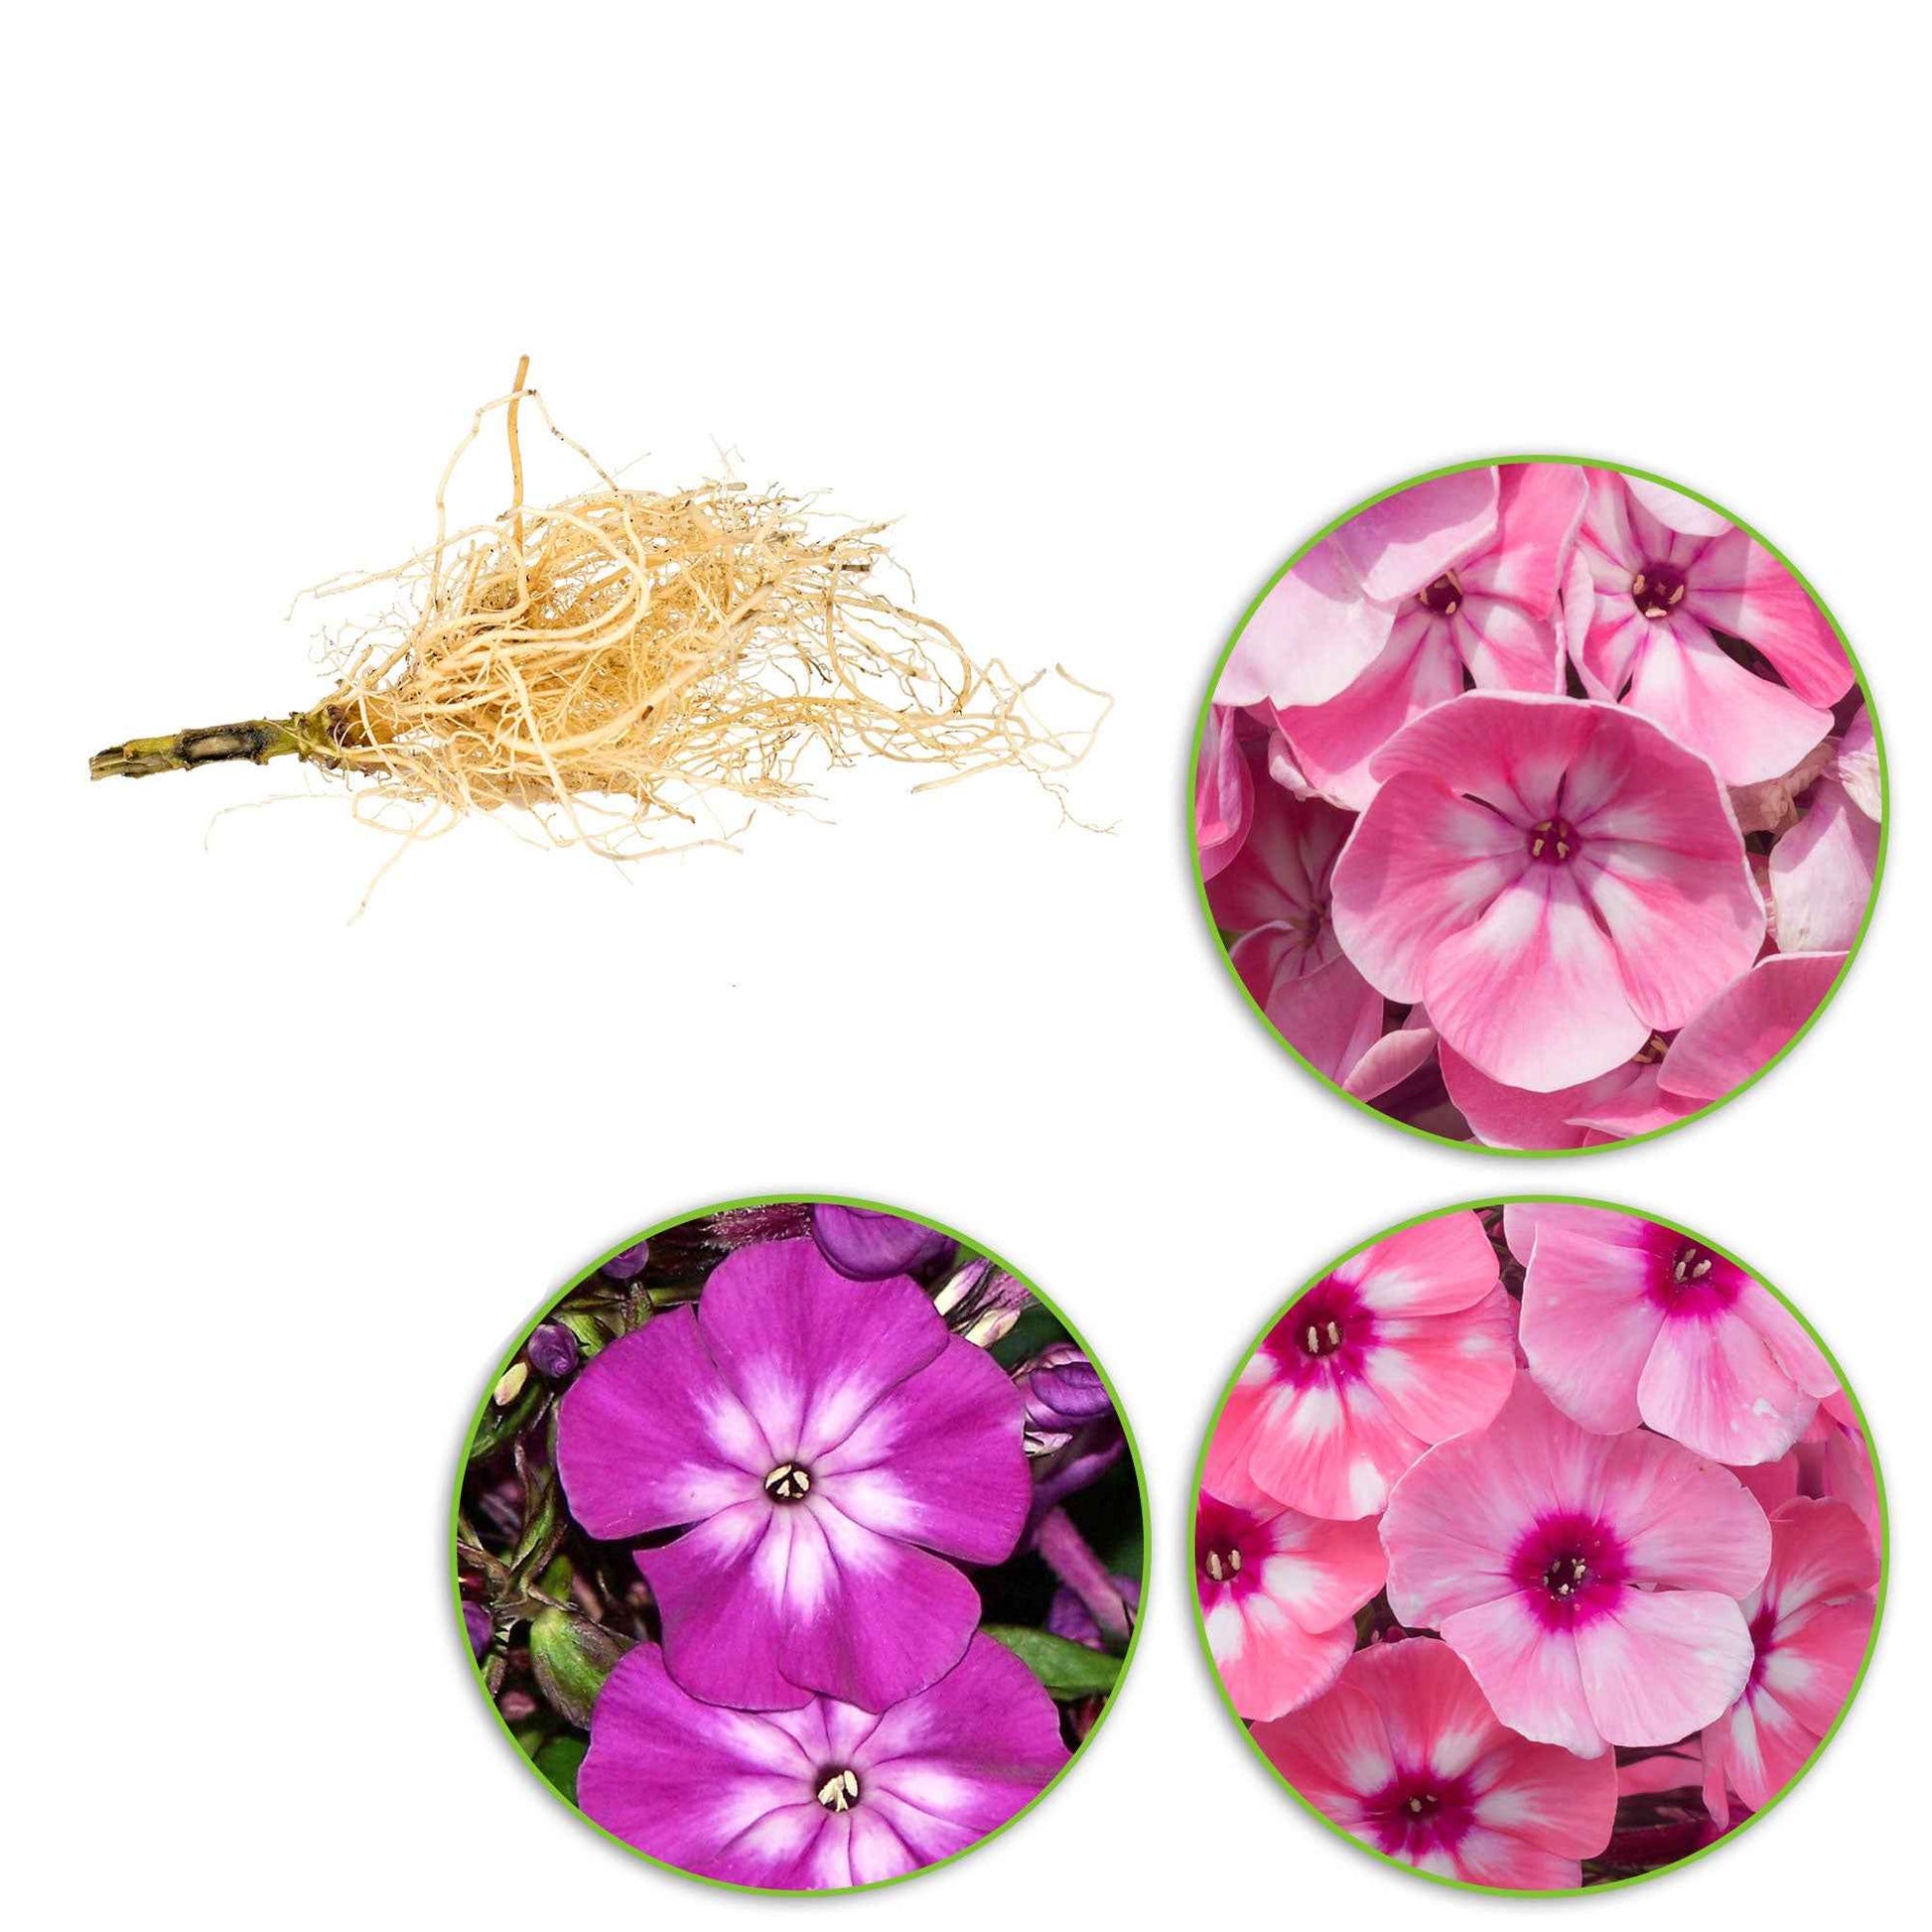 3x Vlambloem Phlox - Mix roze-paars-wit - Bare rooted - Winterhard - Bijvriendelijke borderpakketten